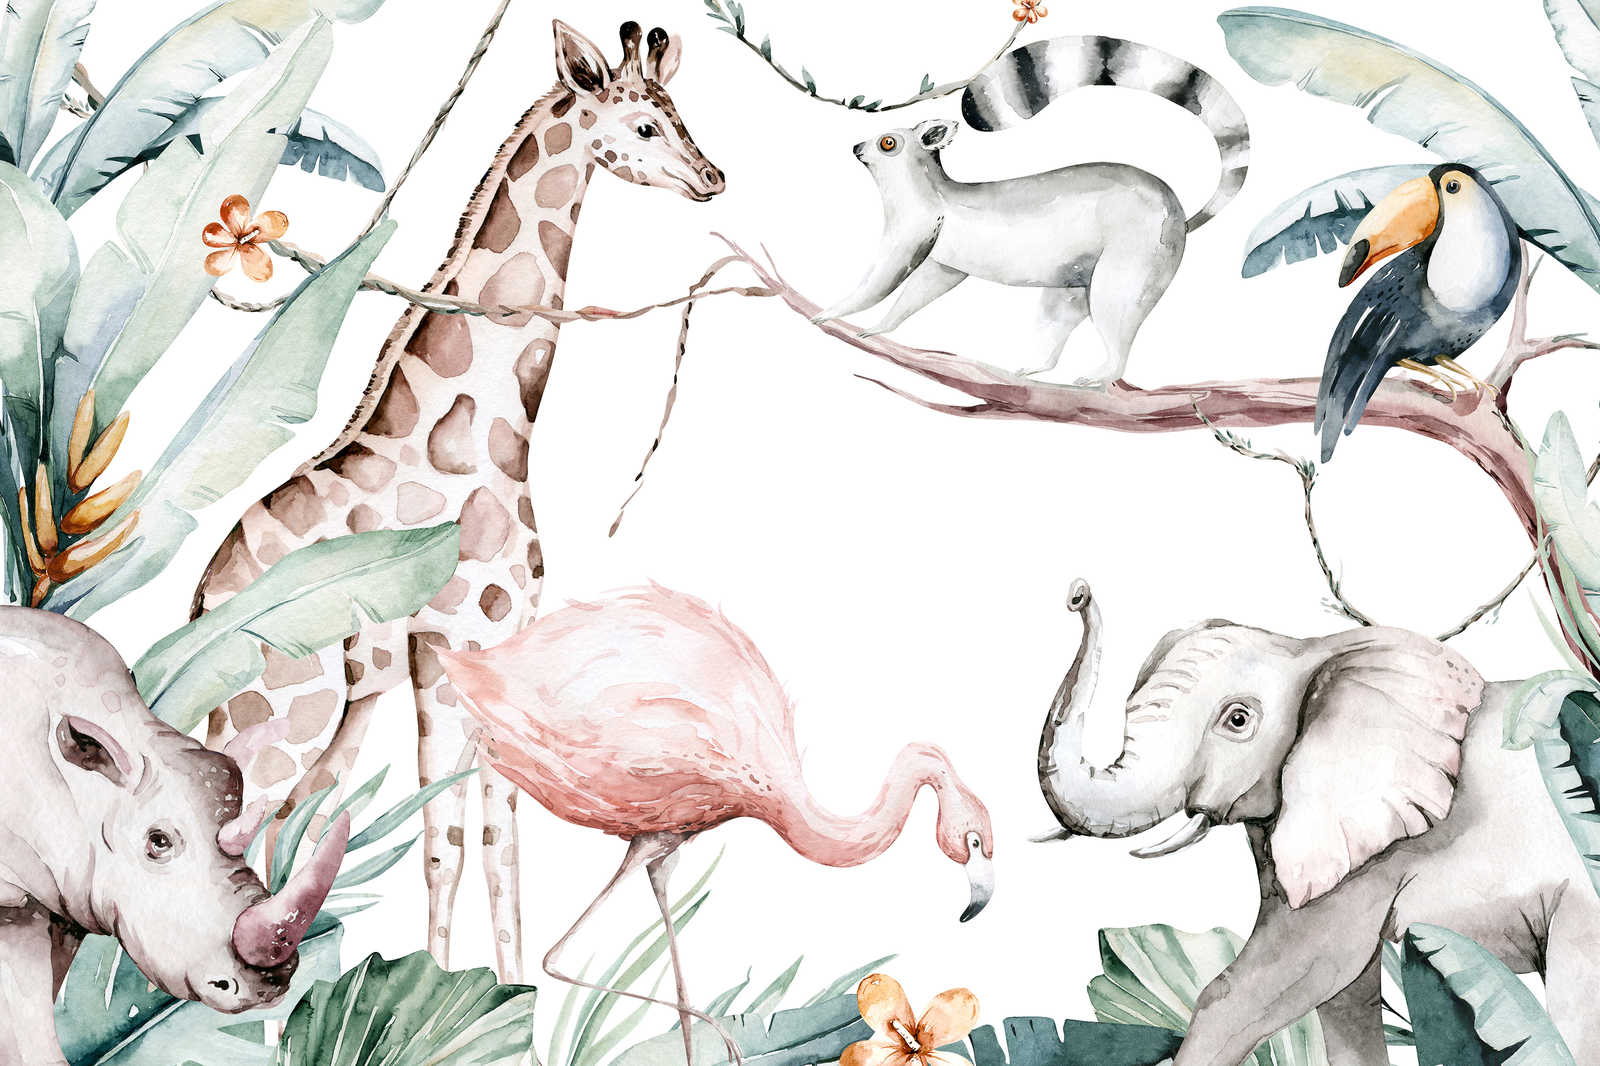             Tableau toile avec animaux de la jungle pour enfants - 0,90 m x 0,60 m
        